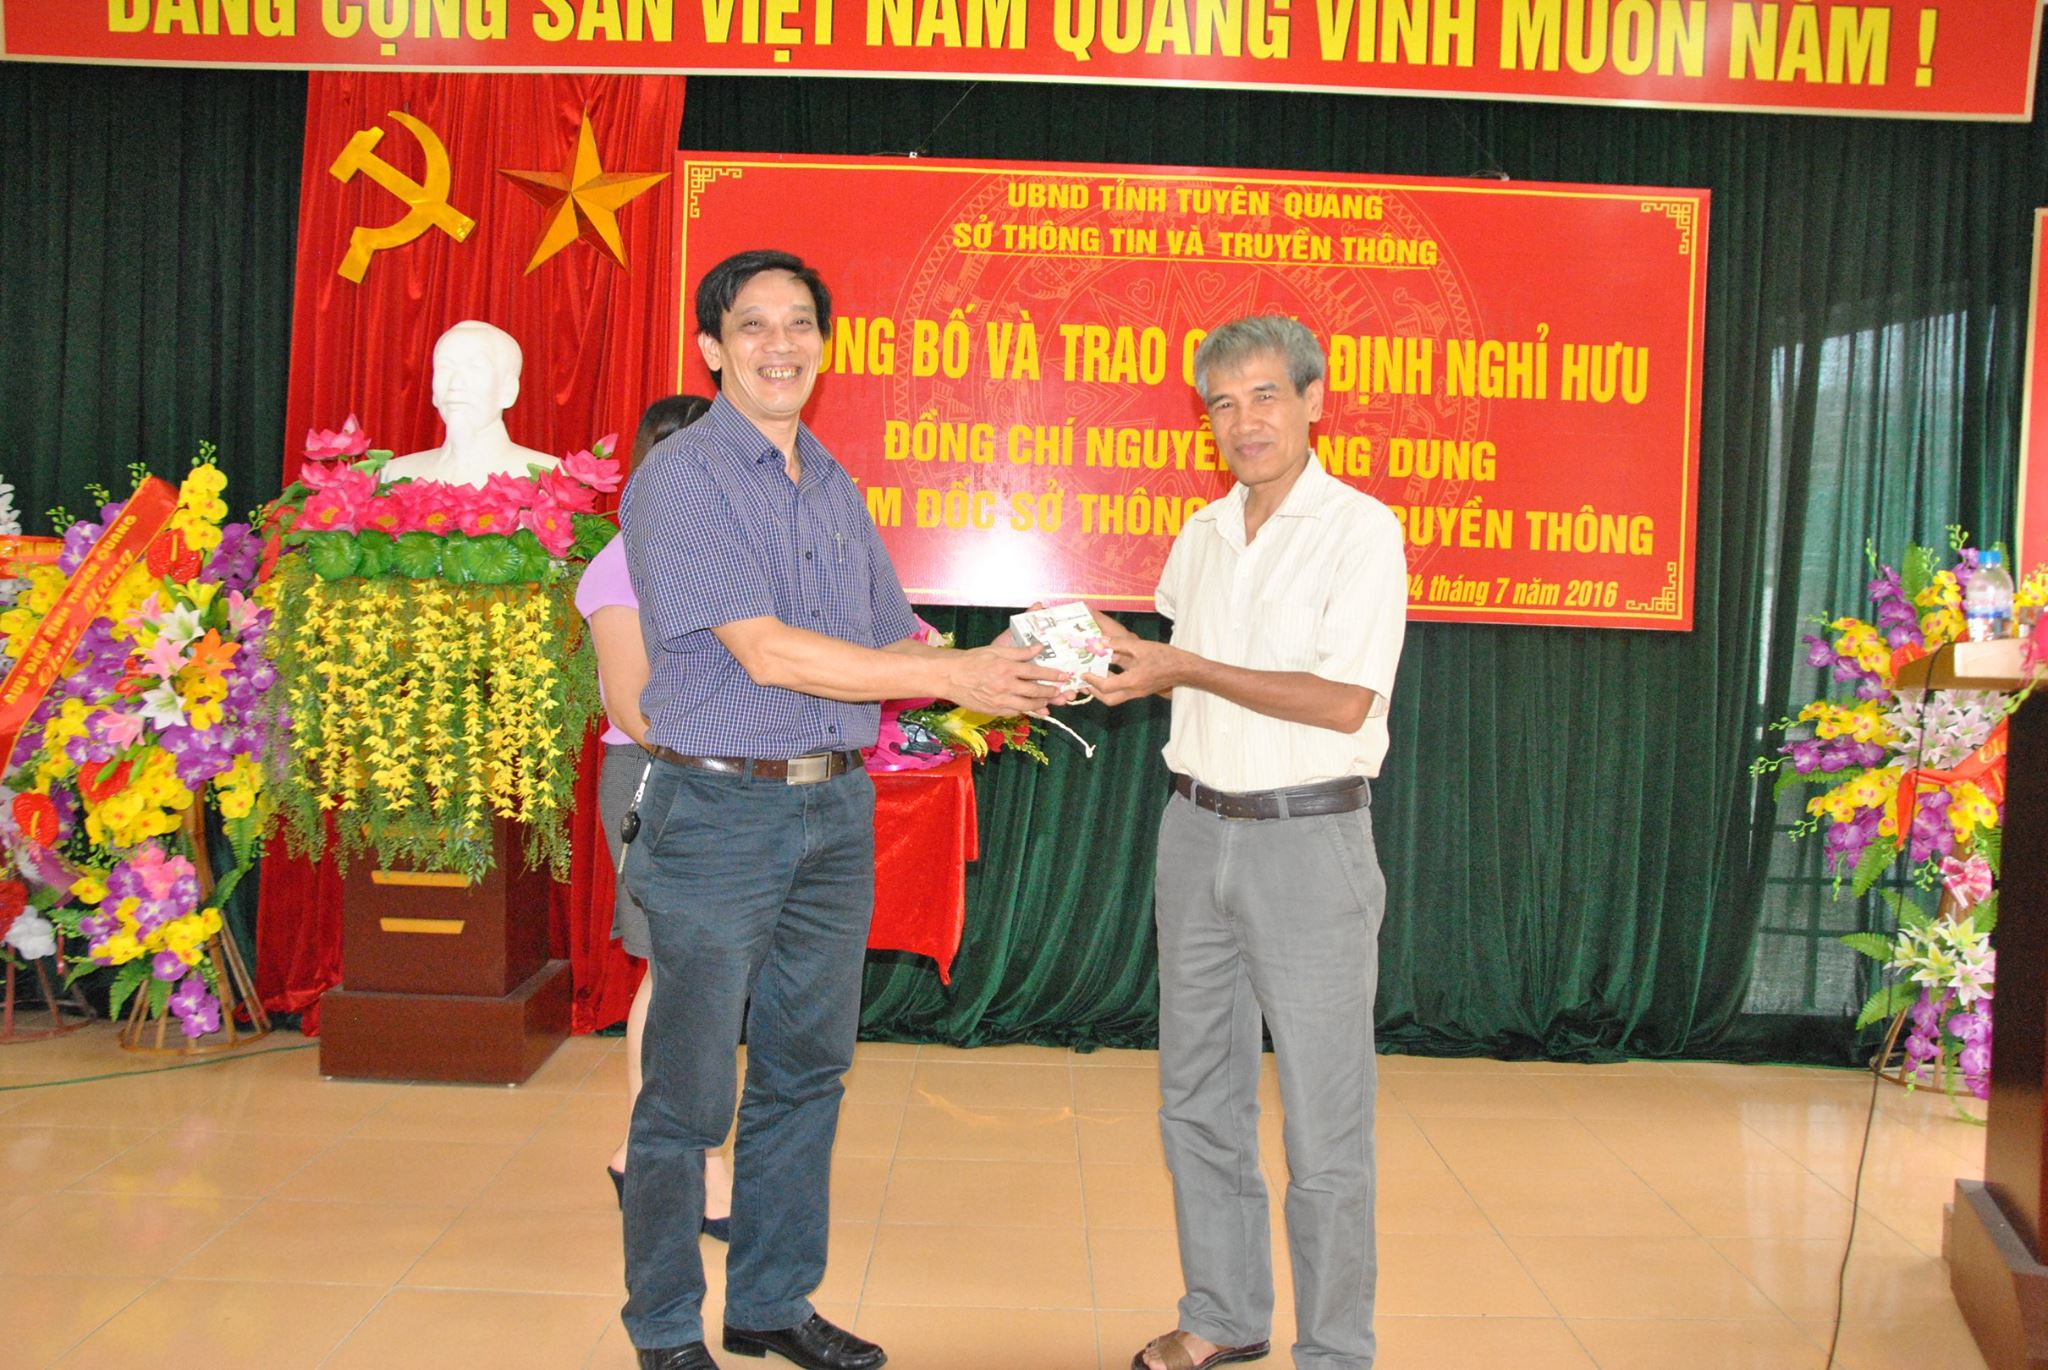 Đồng chí Lê Quang Ninh - Giám đốc Sở tặng quà cho đồng chí Nguyễn Đăng Dung